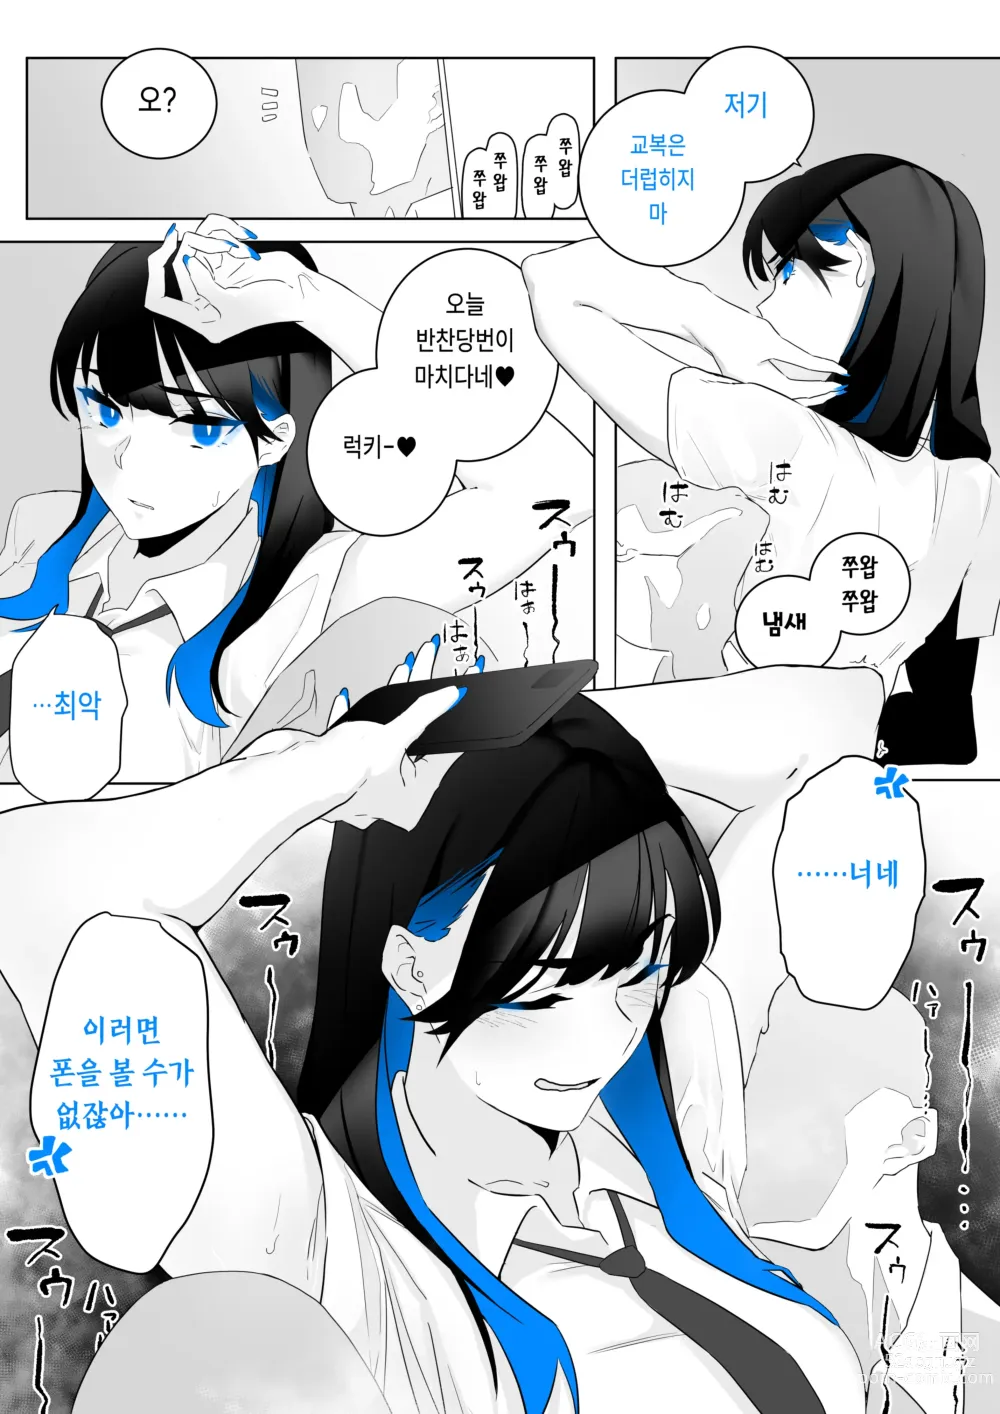 Page 2 of doujinshi Machida-chan 1-17